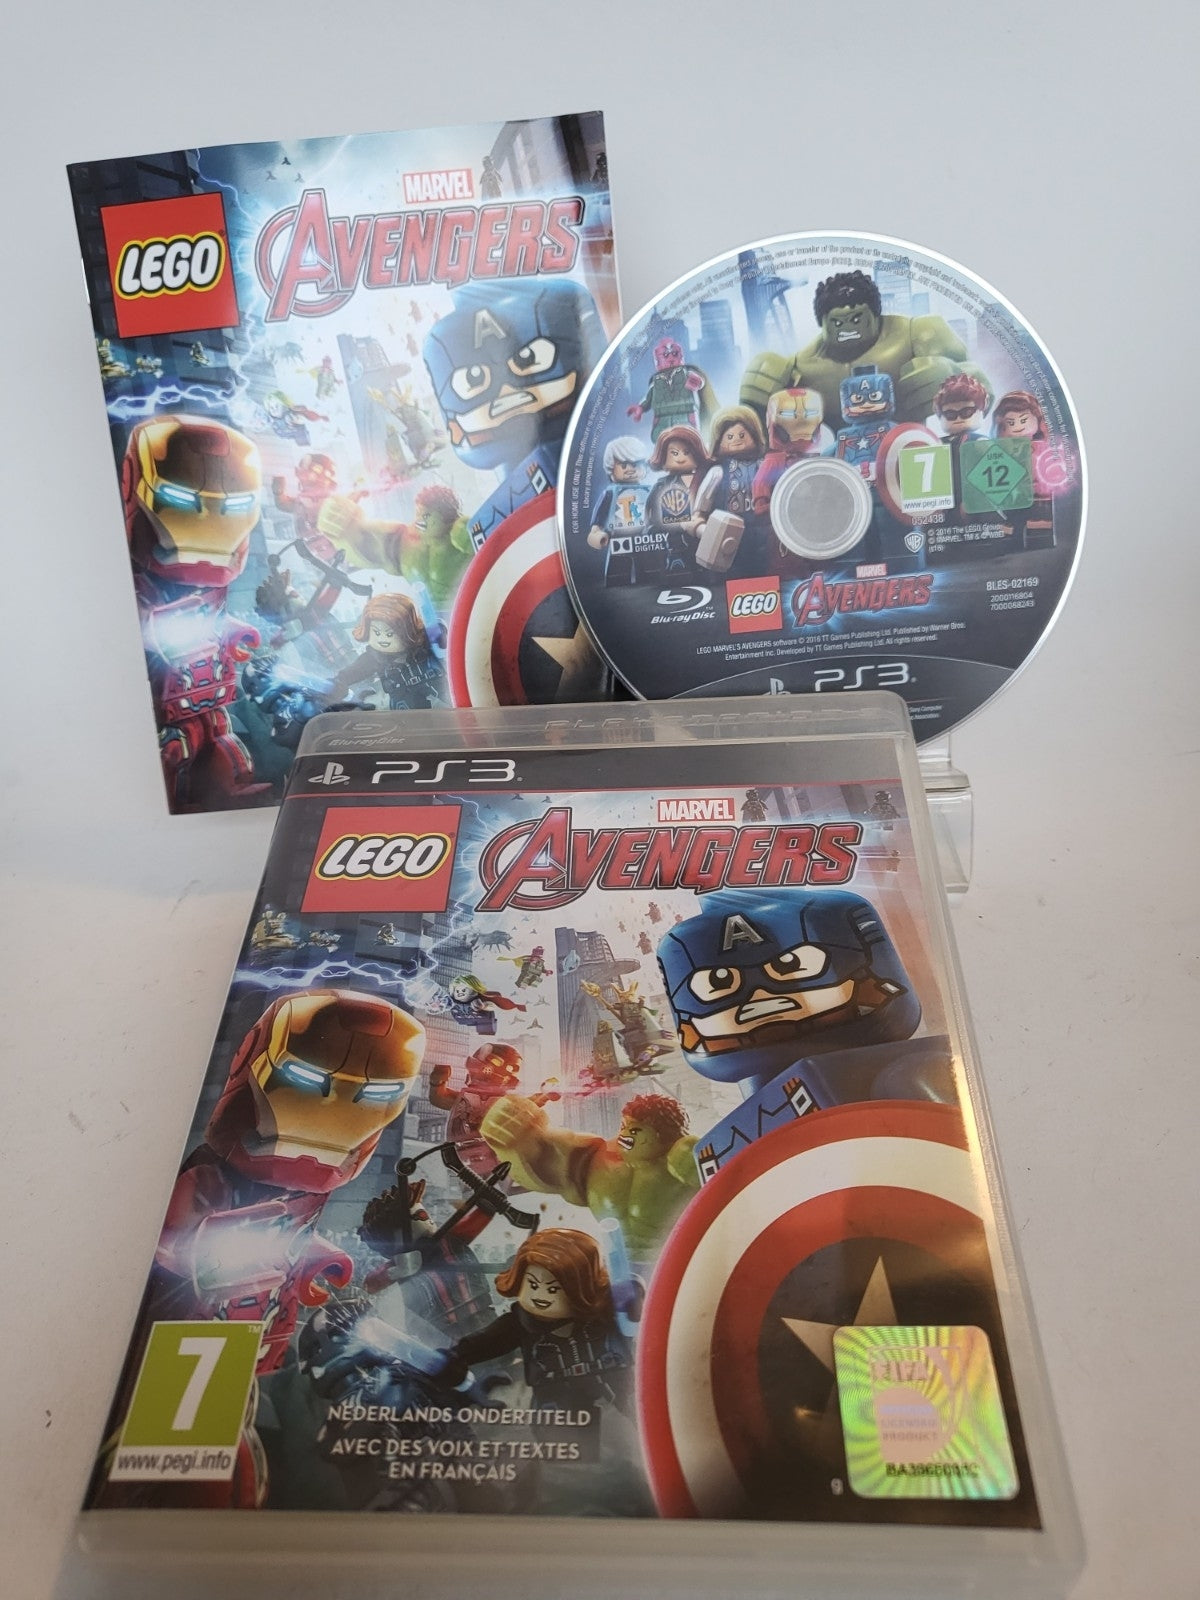 LEGO Marvel Avengers Playstation 3